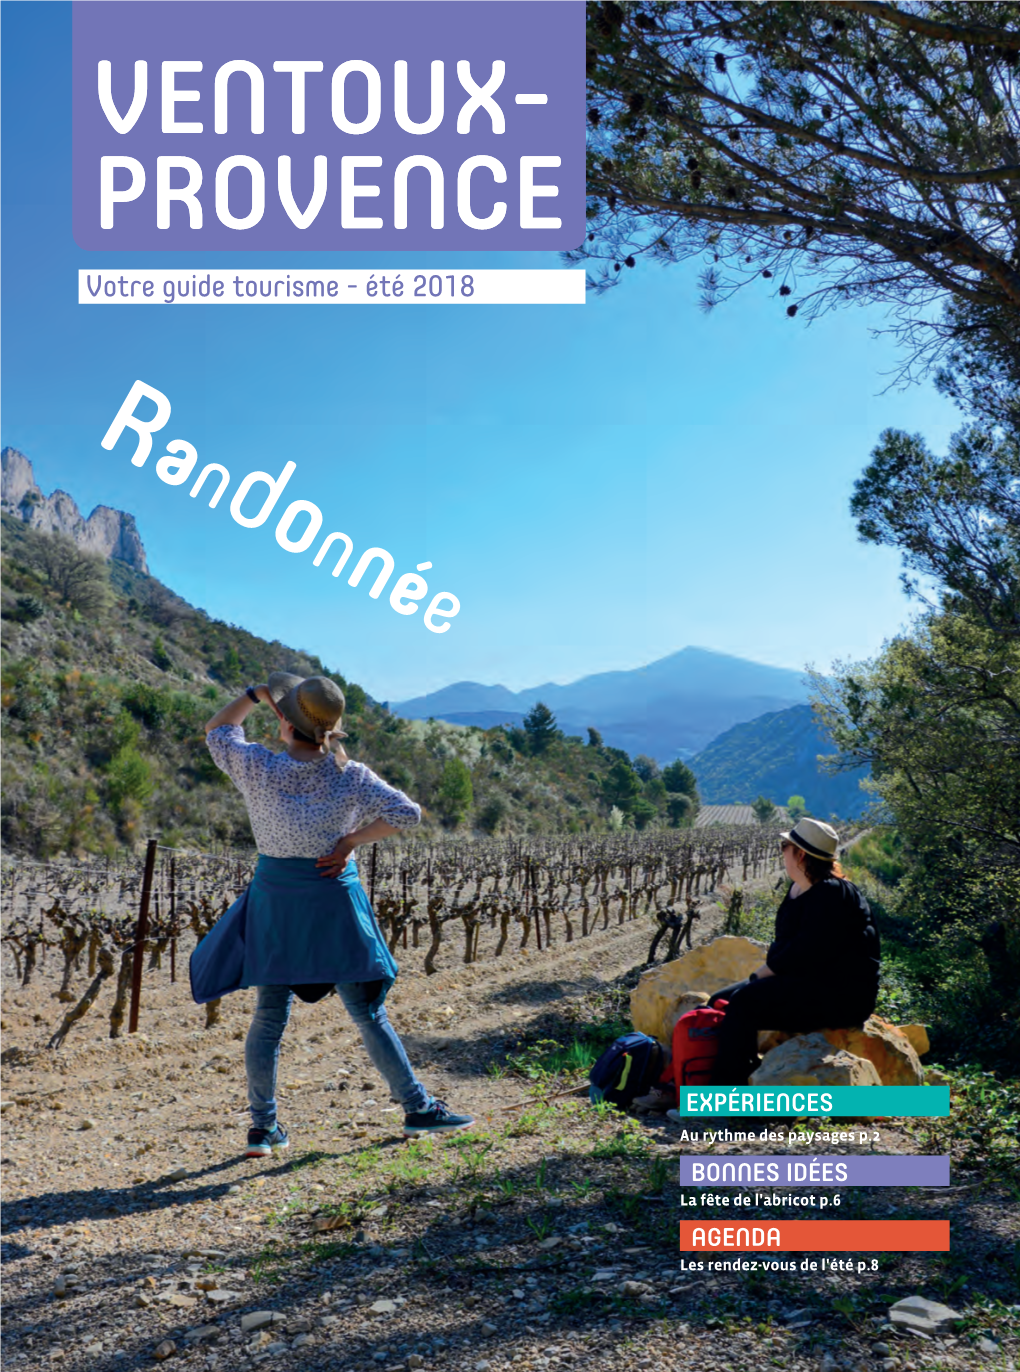 VENTOUX- PROVENCE Votre Guide Tourisme - Été 2018 R and on Née